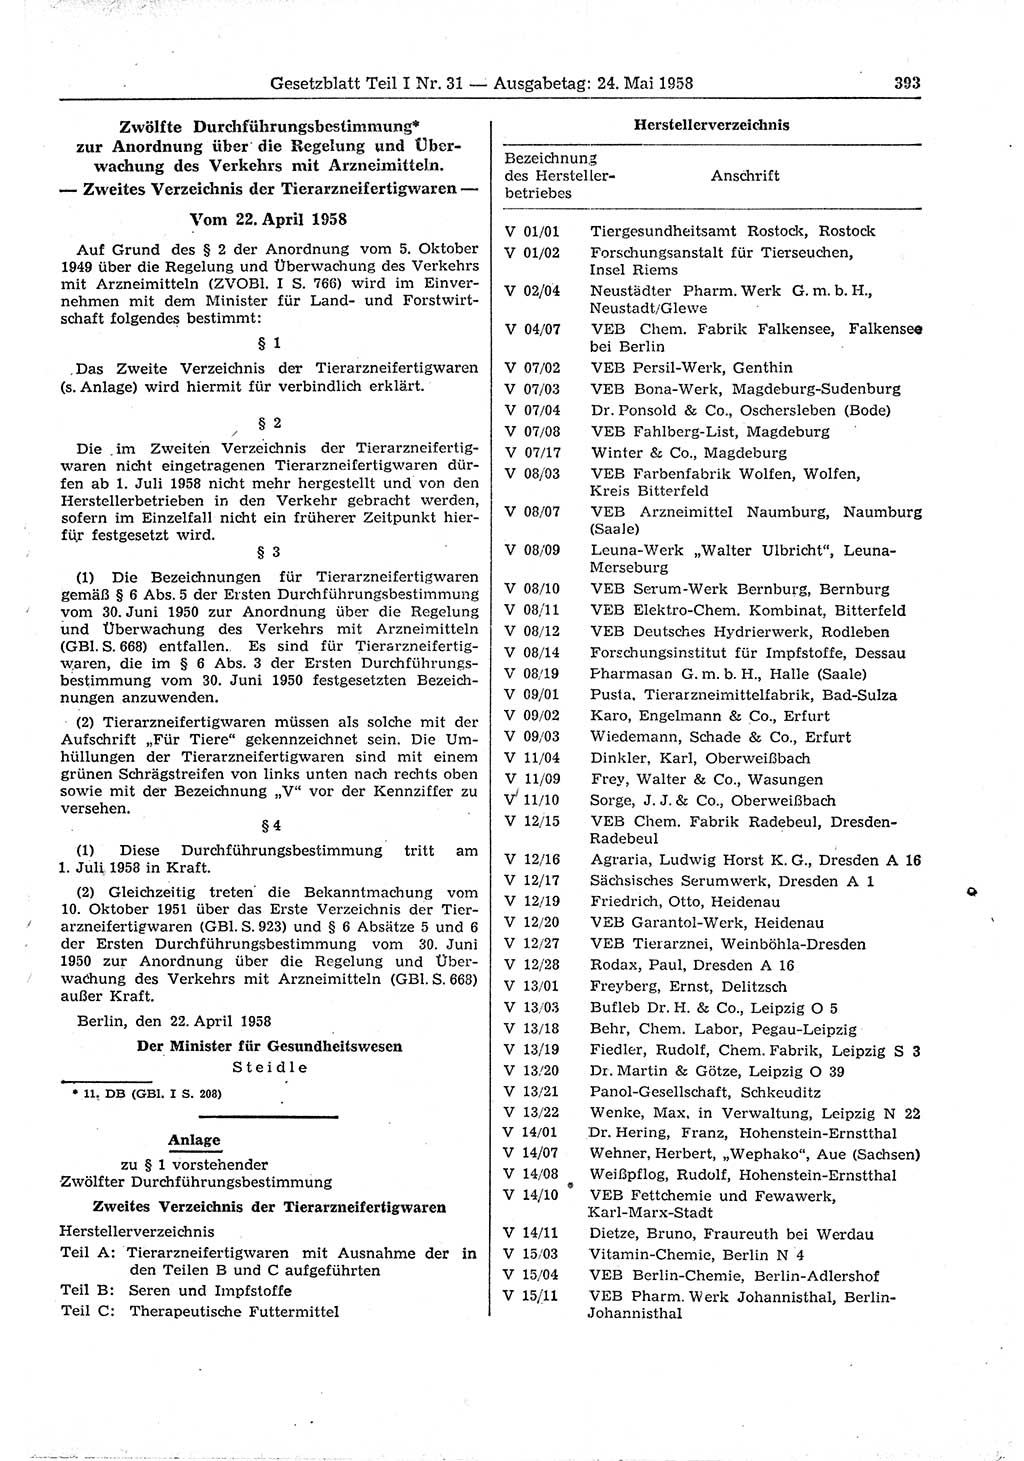 Gesetzblatt (GBl.) der Deutschen Demokratischen Republik (DDR) Teil Ⅰ 1958, Seite 393 (GBl. DDR Ⅰ 1958, S. 393)